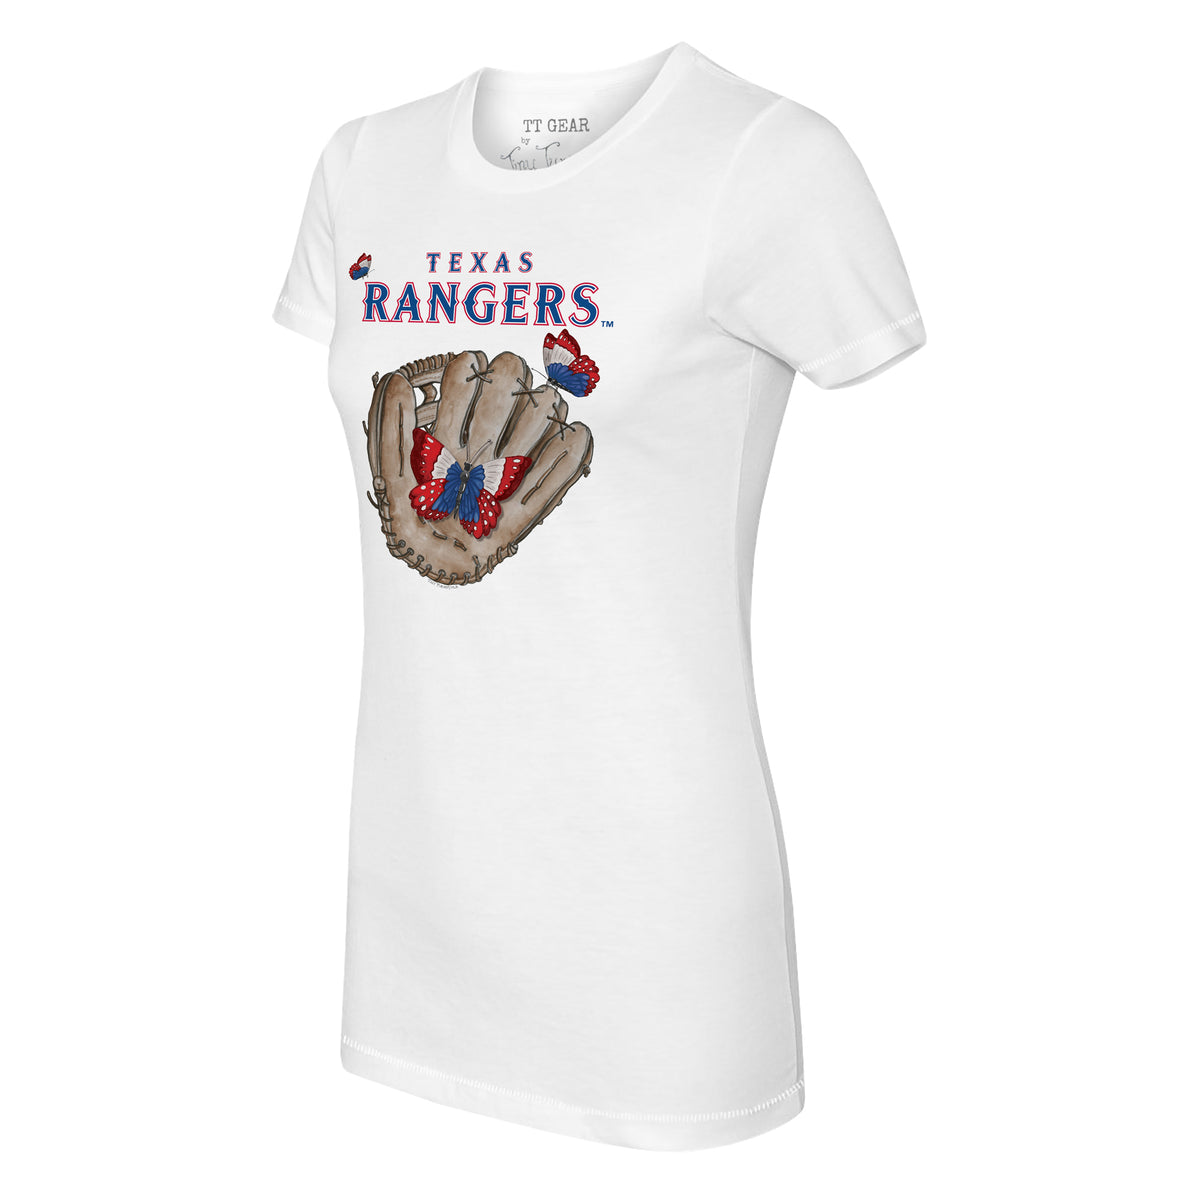 Texas Rangers Butterfly Glove Tee Shirt